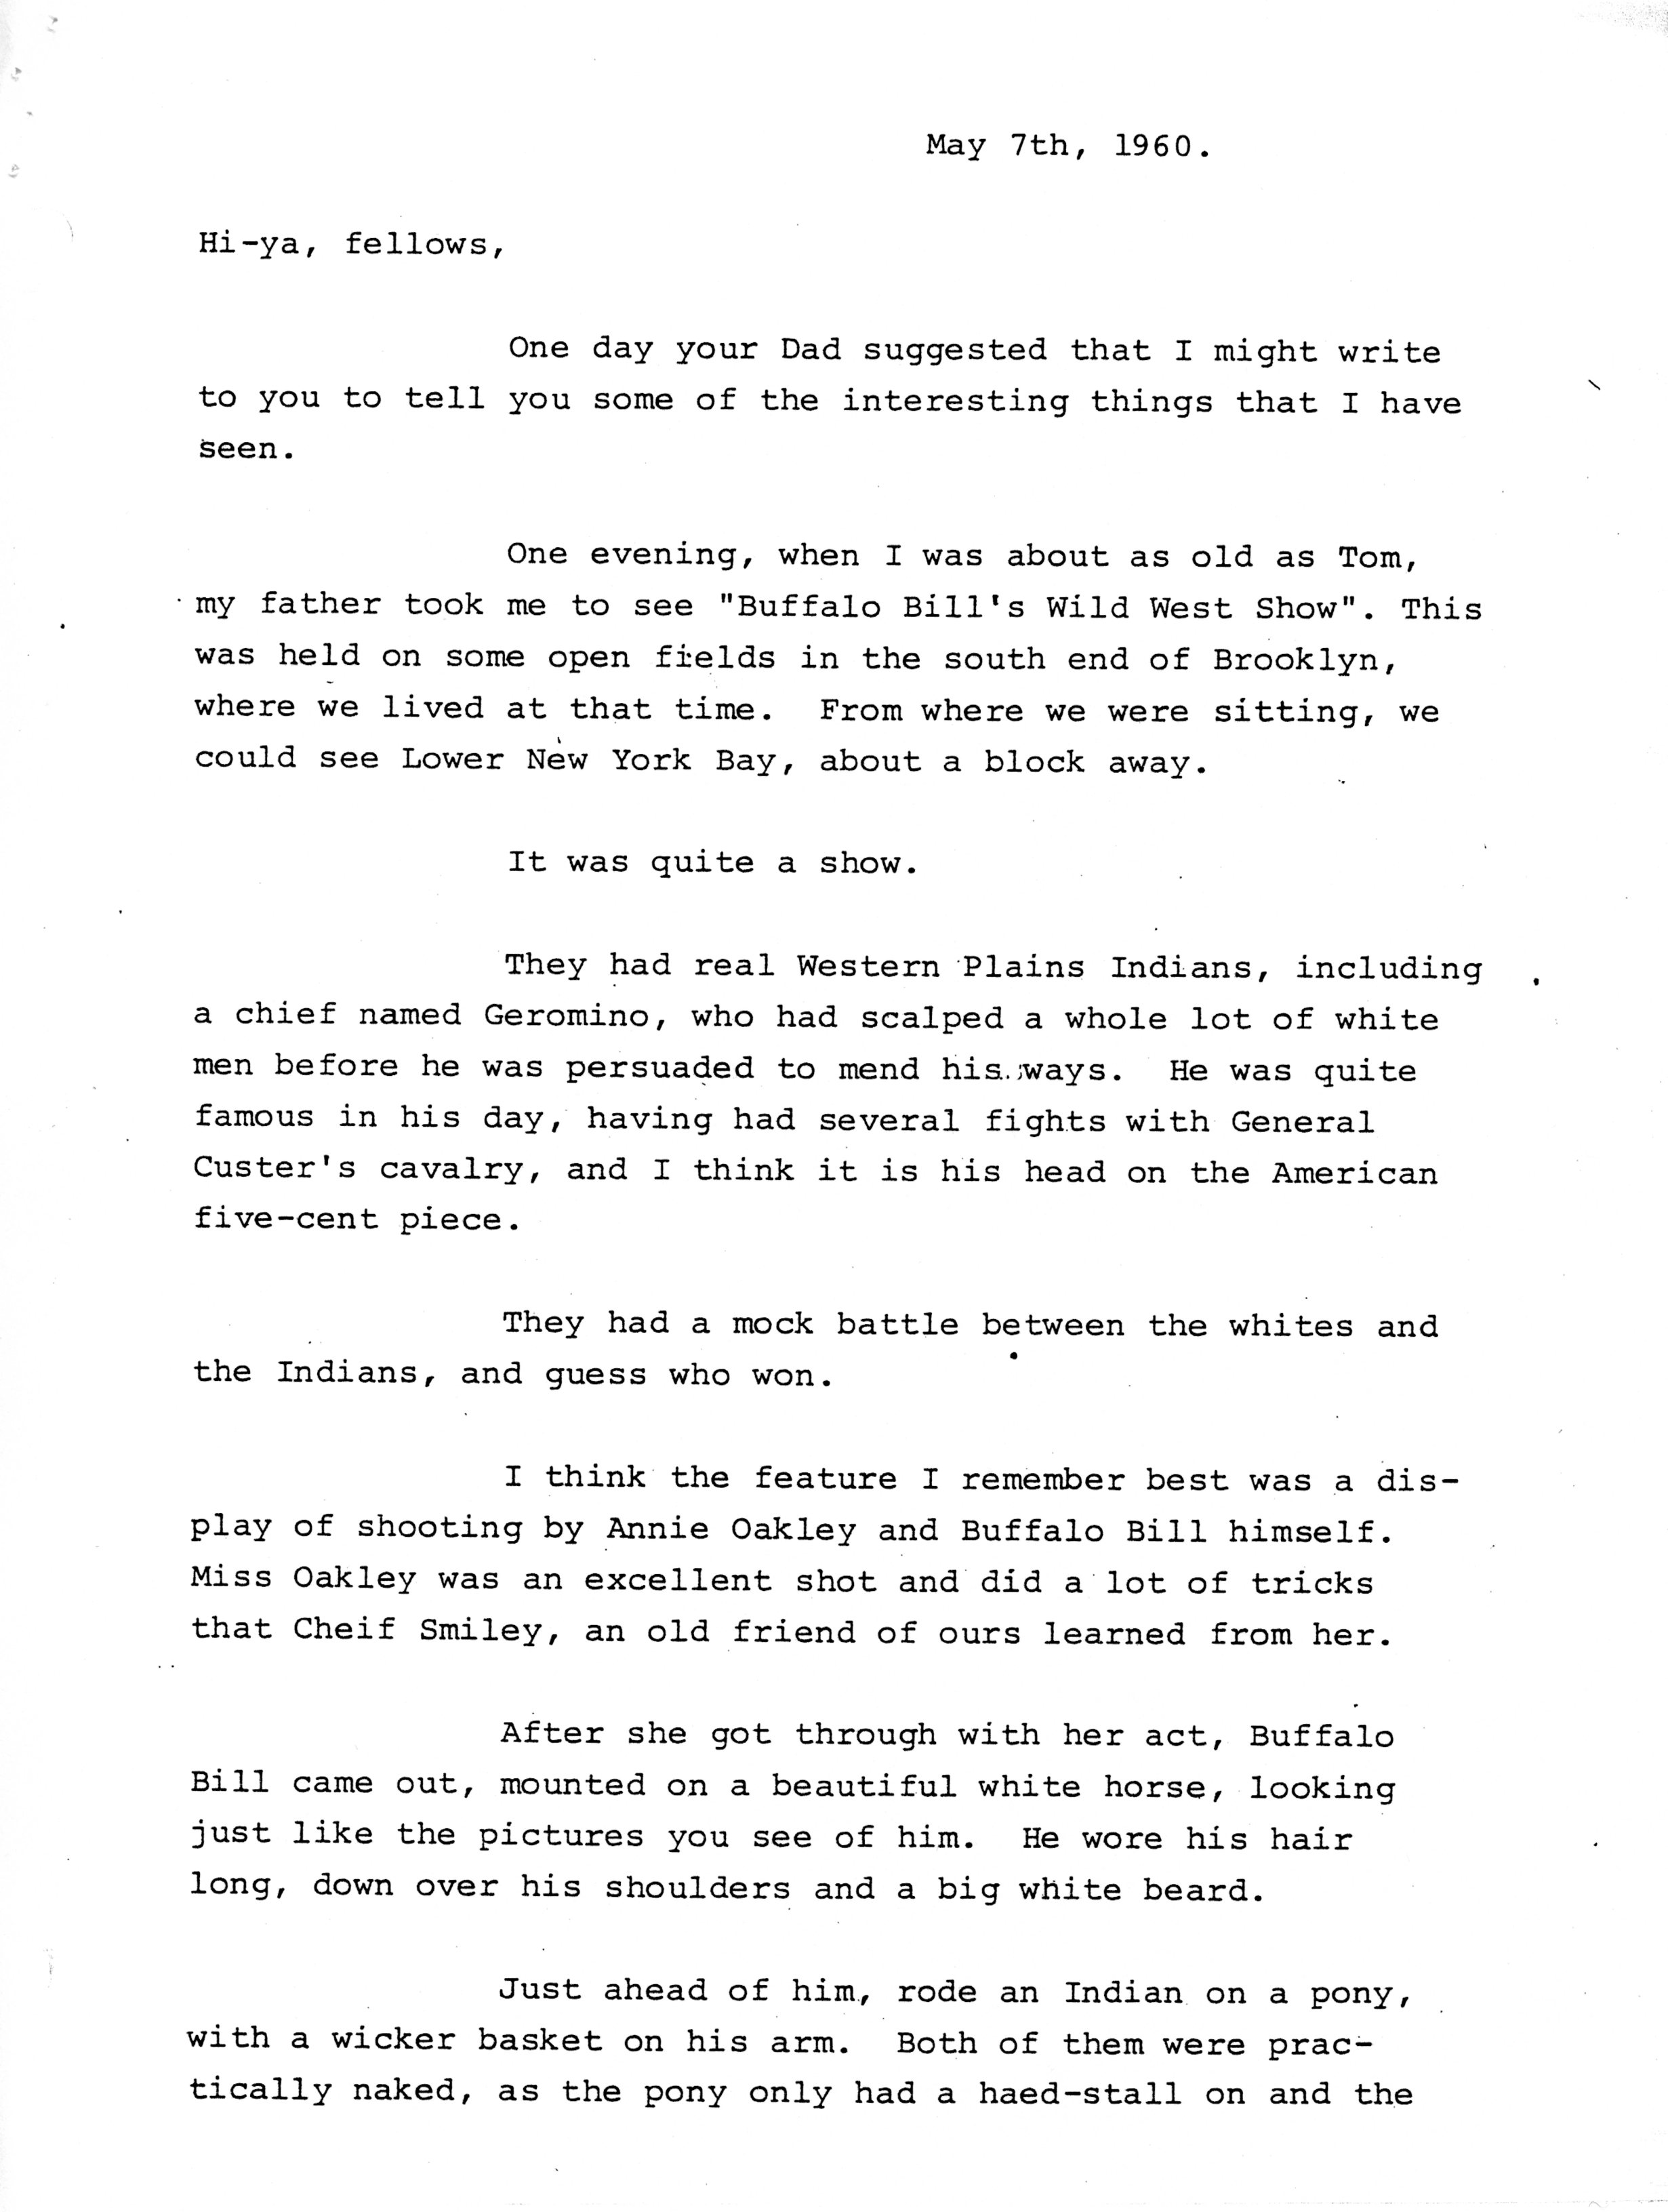 1960-05-07 p1 of 2 Letters from Wm Arnott STEVENS